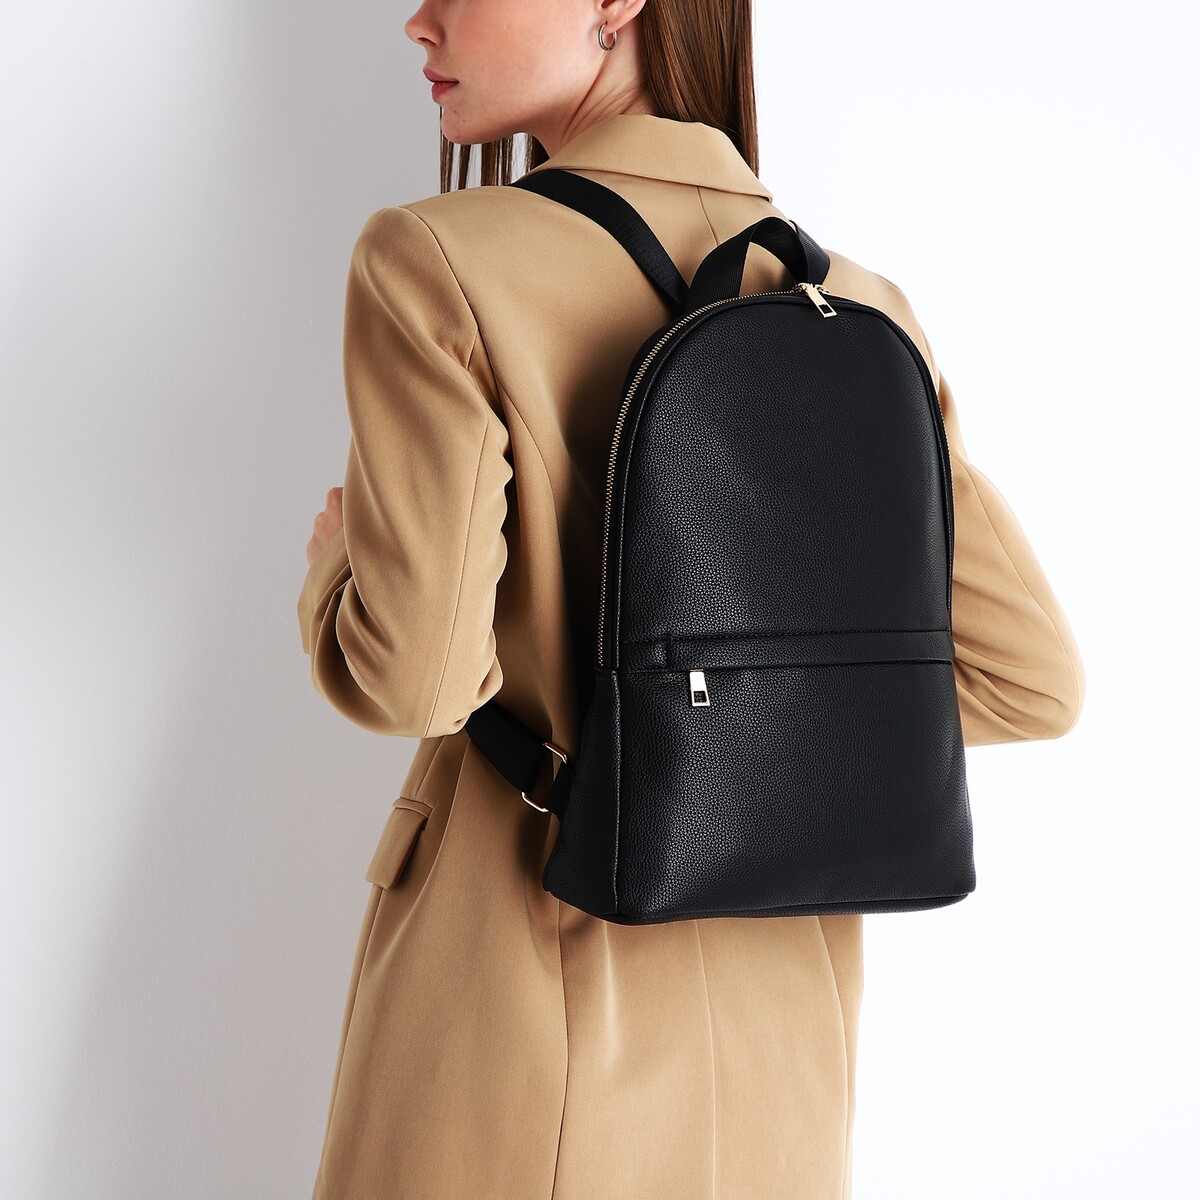 Рюкзак женский из искусственной кожи на молнии, 2 кармана, цвет черный рюкзак городской из искусственной кожи на молнии 3 кармана